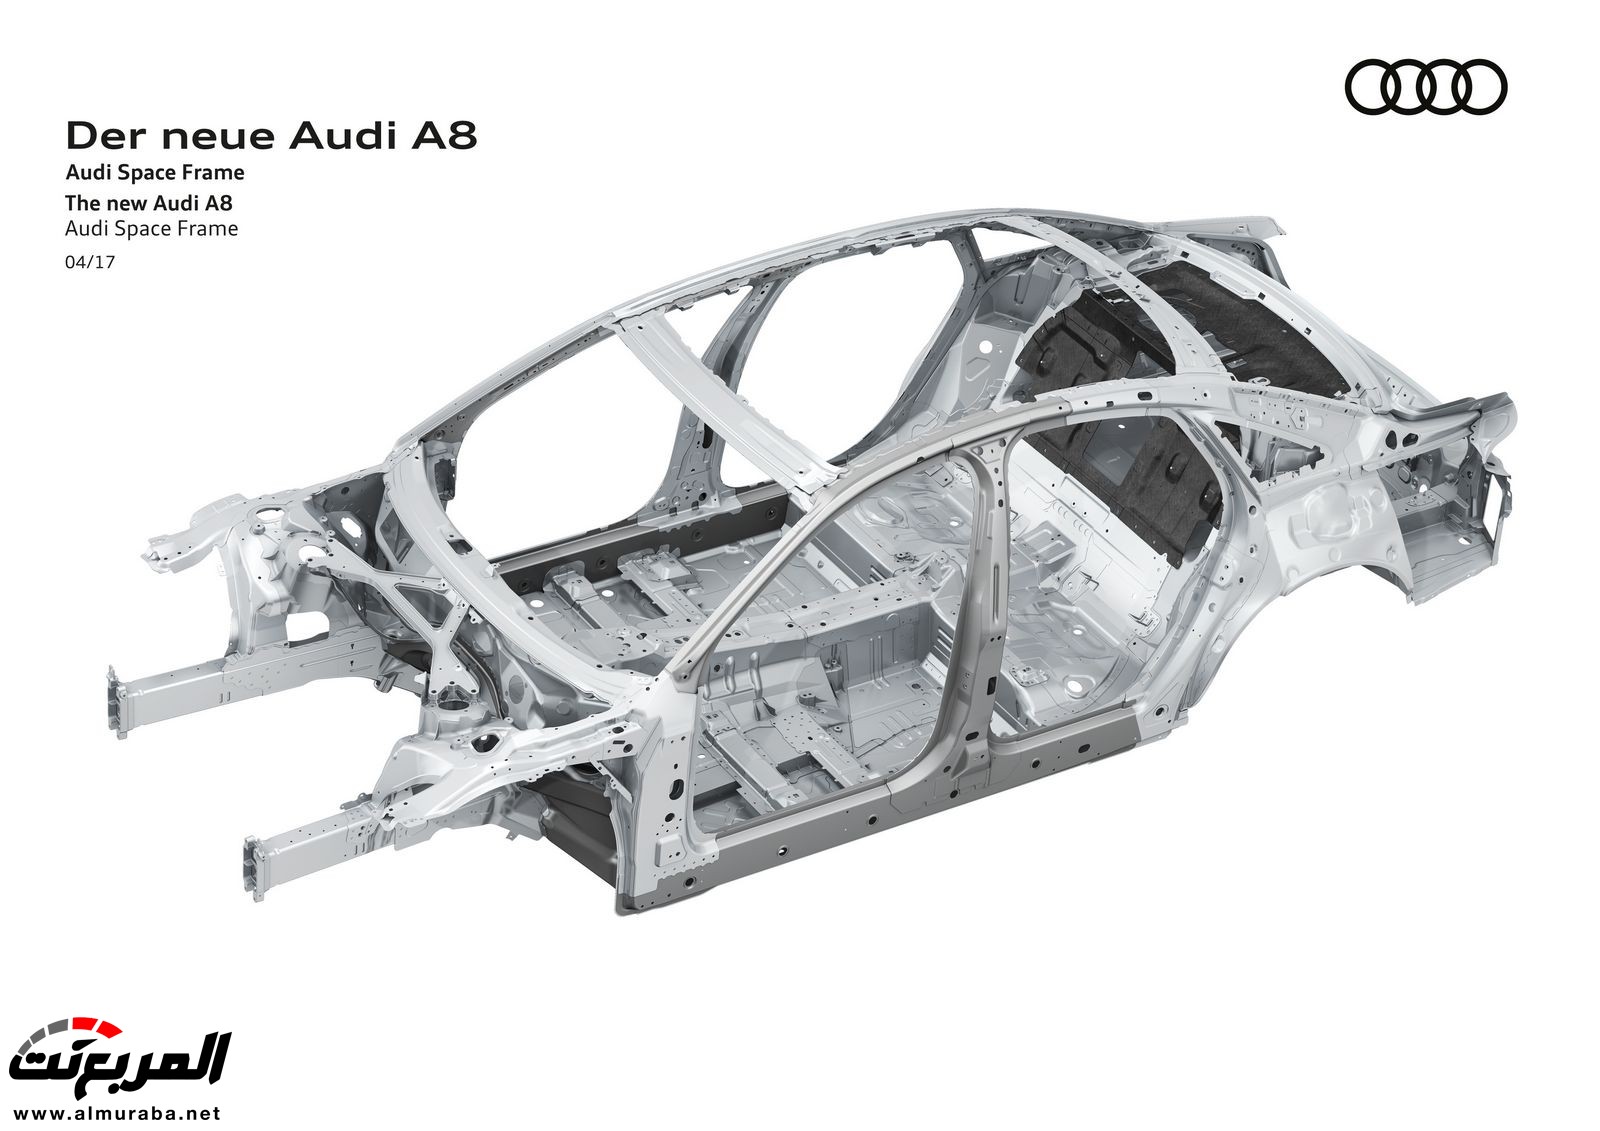 أودي A8 2018 الجديدة كلياً تكشف نفسها بتصميم وتقنيات متطورة "معلومات + 100 صورة" Audi A8 65